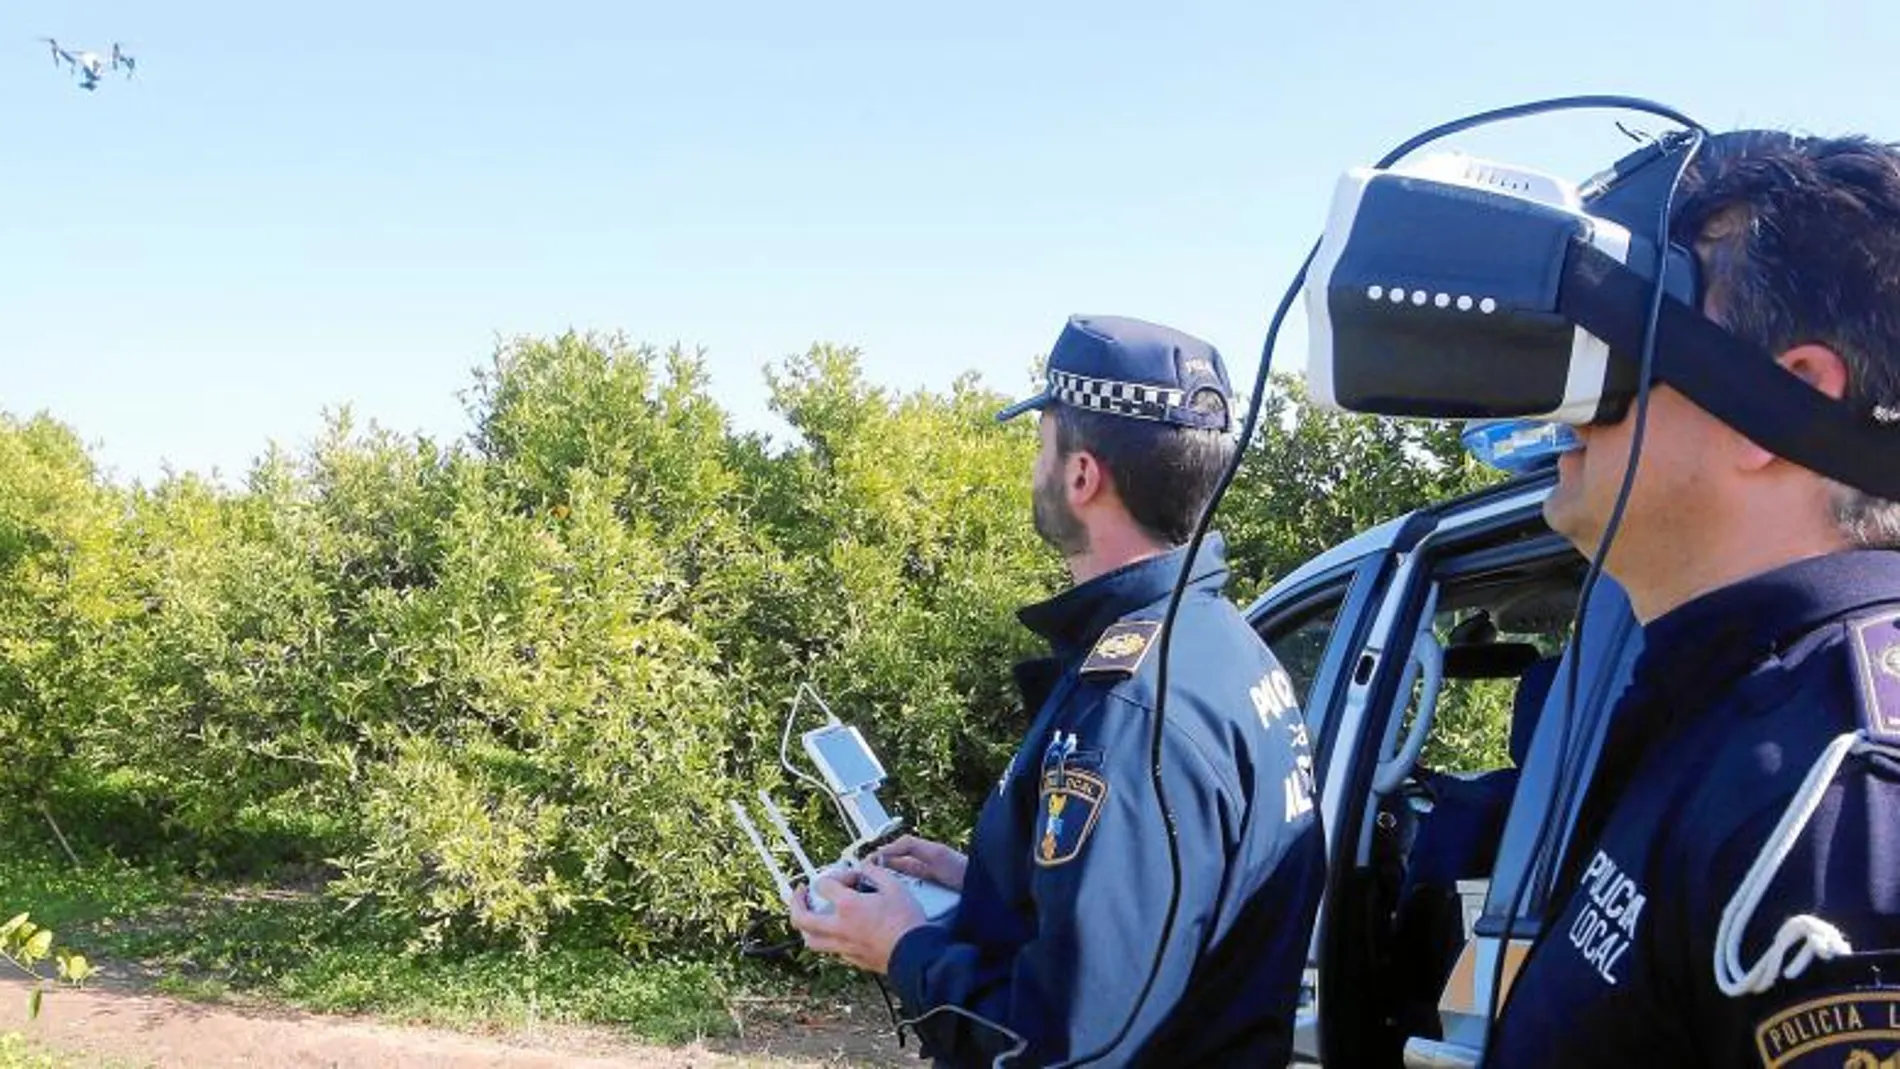 Las fuerzas de Seguridad ya incorporan los drones y las gafas de realidad virtual en actuaciones en el exterior, como la vigilancia de cultivos